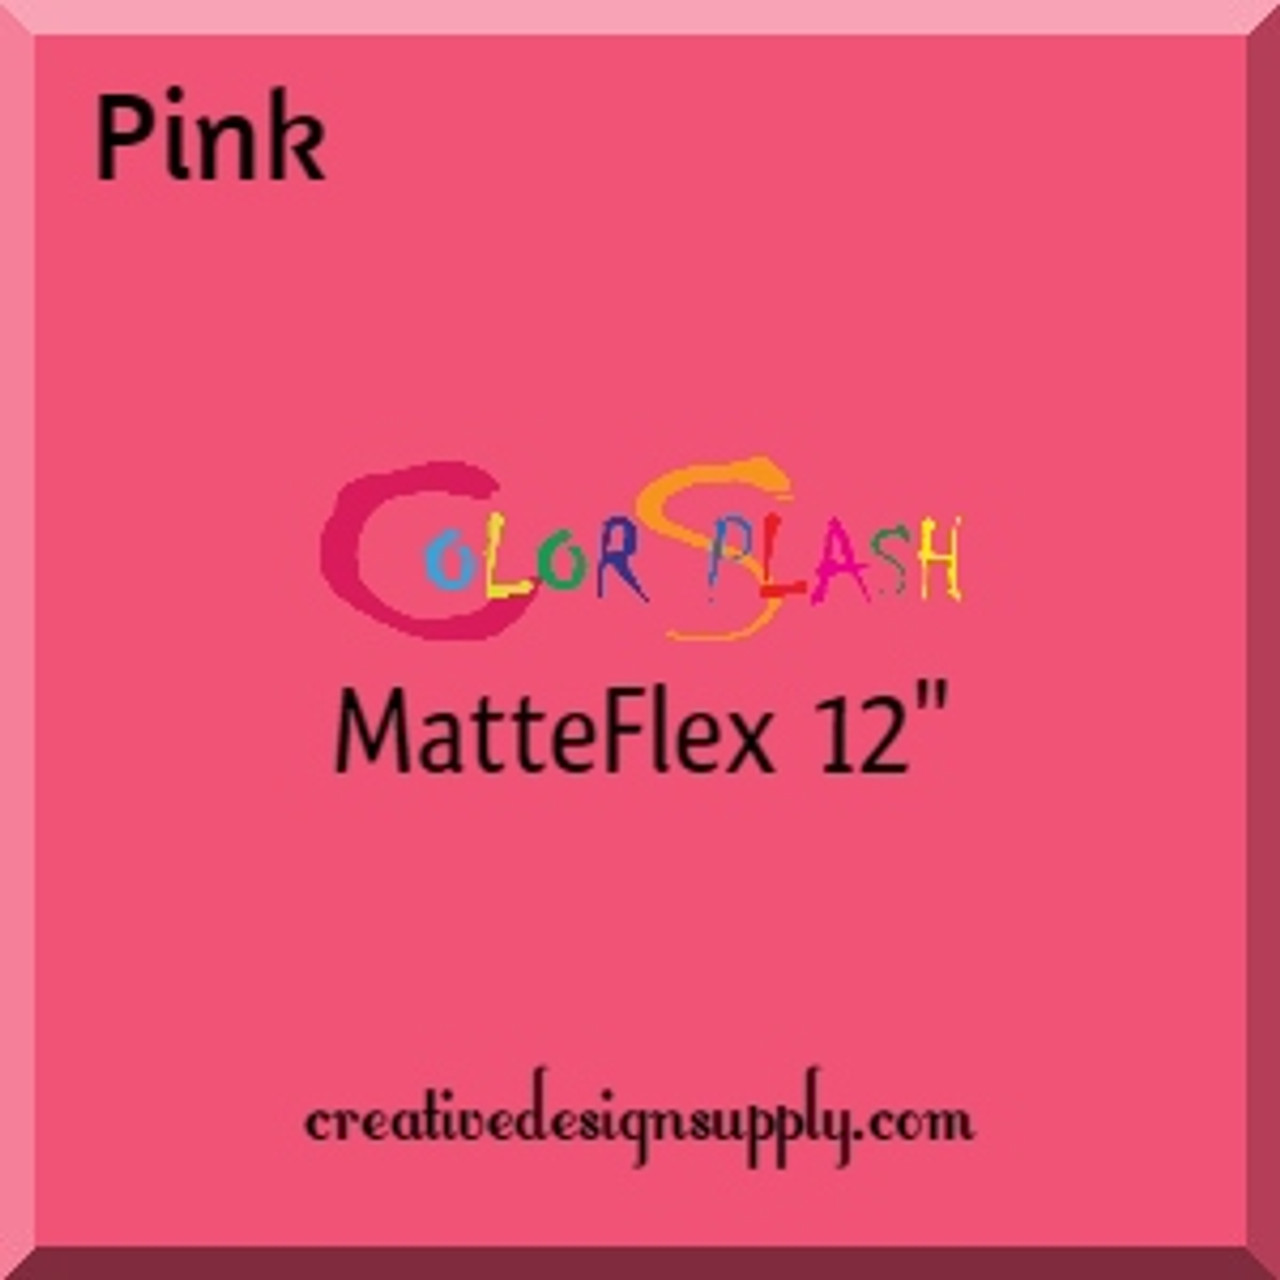 ColorSplash MatteFlex 12" | Pink